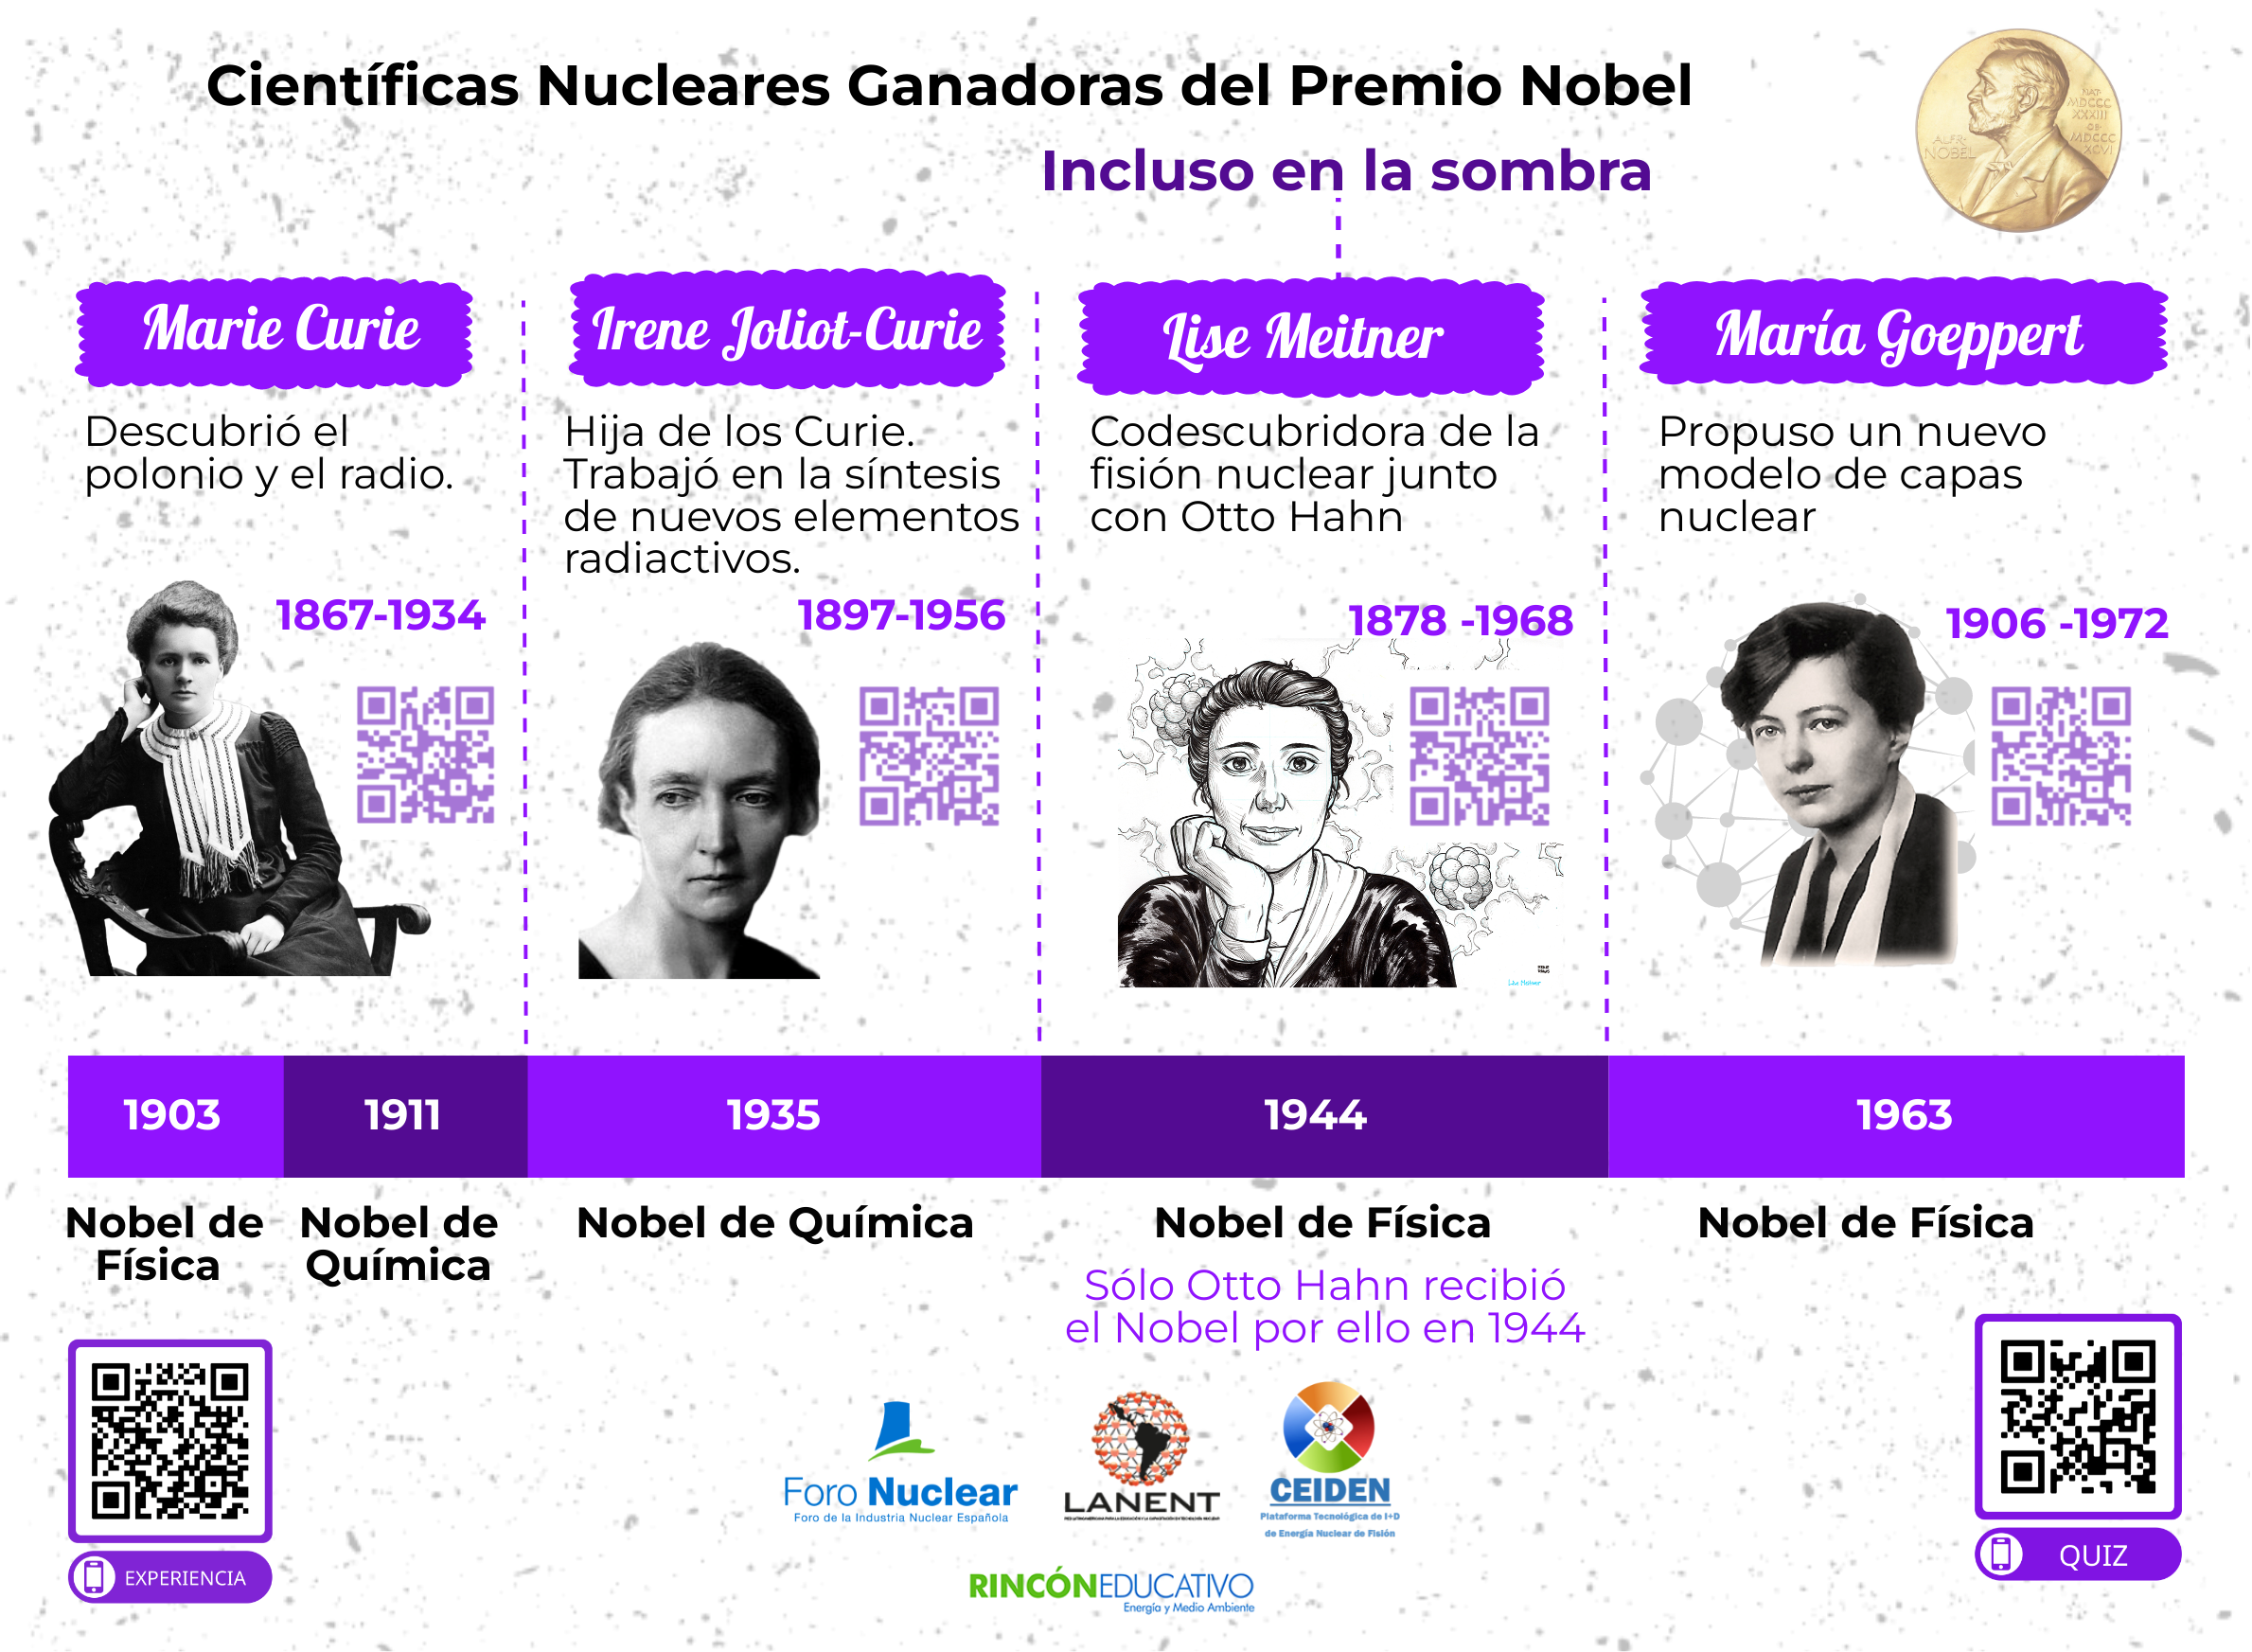 Lamina interactiva sobre cientificas nucleares ganadoras de un premio nobel